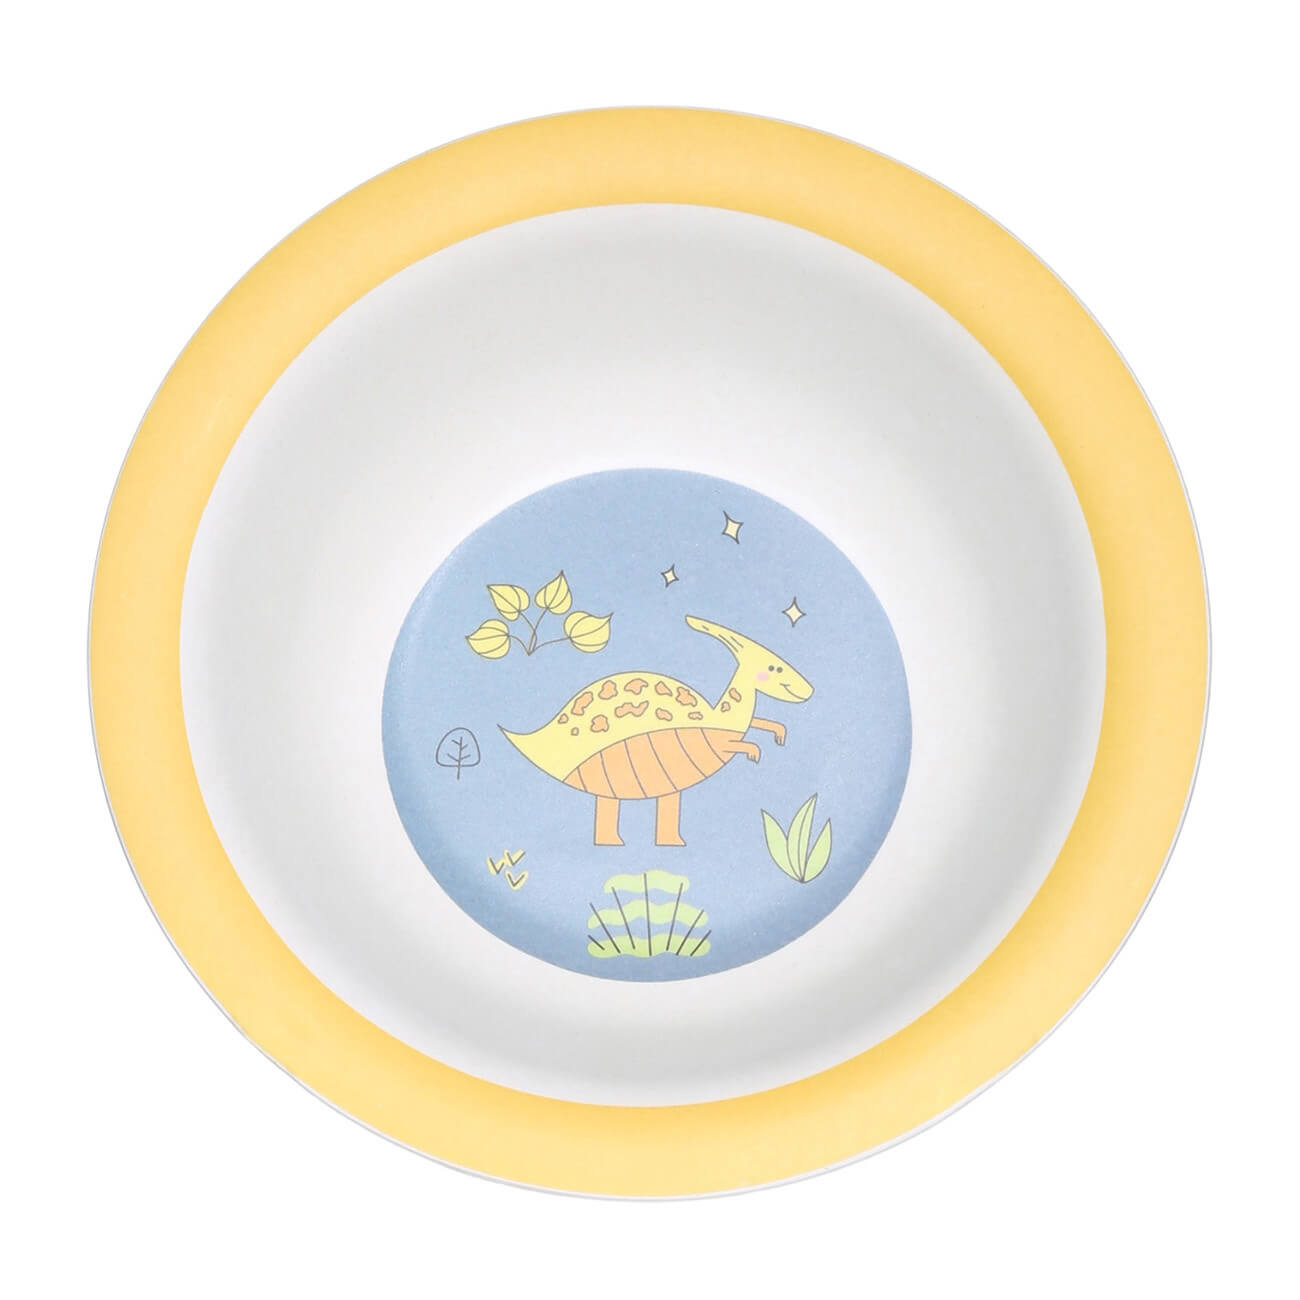 Тарелка суповая, детская, 15х4 см, бамбук, желто-голубая, Динозавр, Dino тарелка детская из бамбука трехсекционная